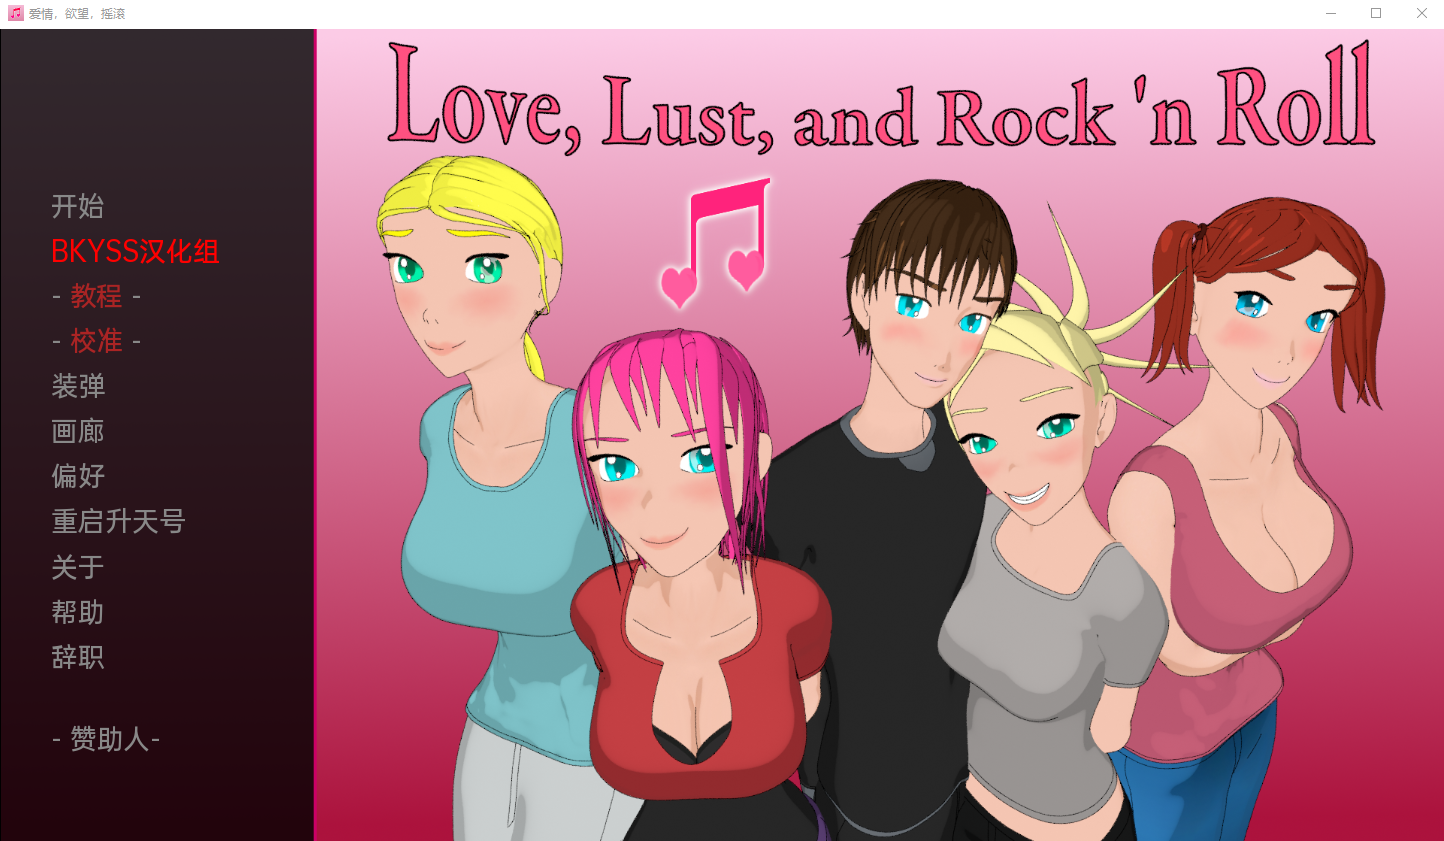 [欧美SLG/汉化/2D] 爱、欲望和摇滚乐 Love, Lust, and Rock ‘n Roll v1.5 PC+安卓汉化版 [多空/1G/百度直连]